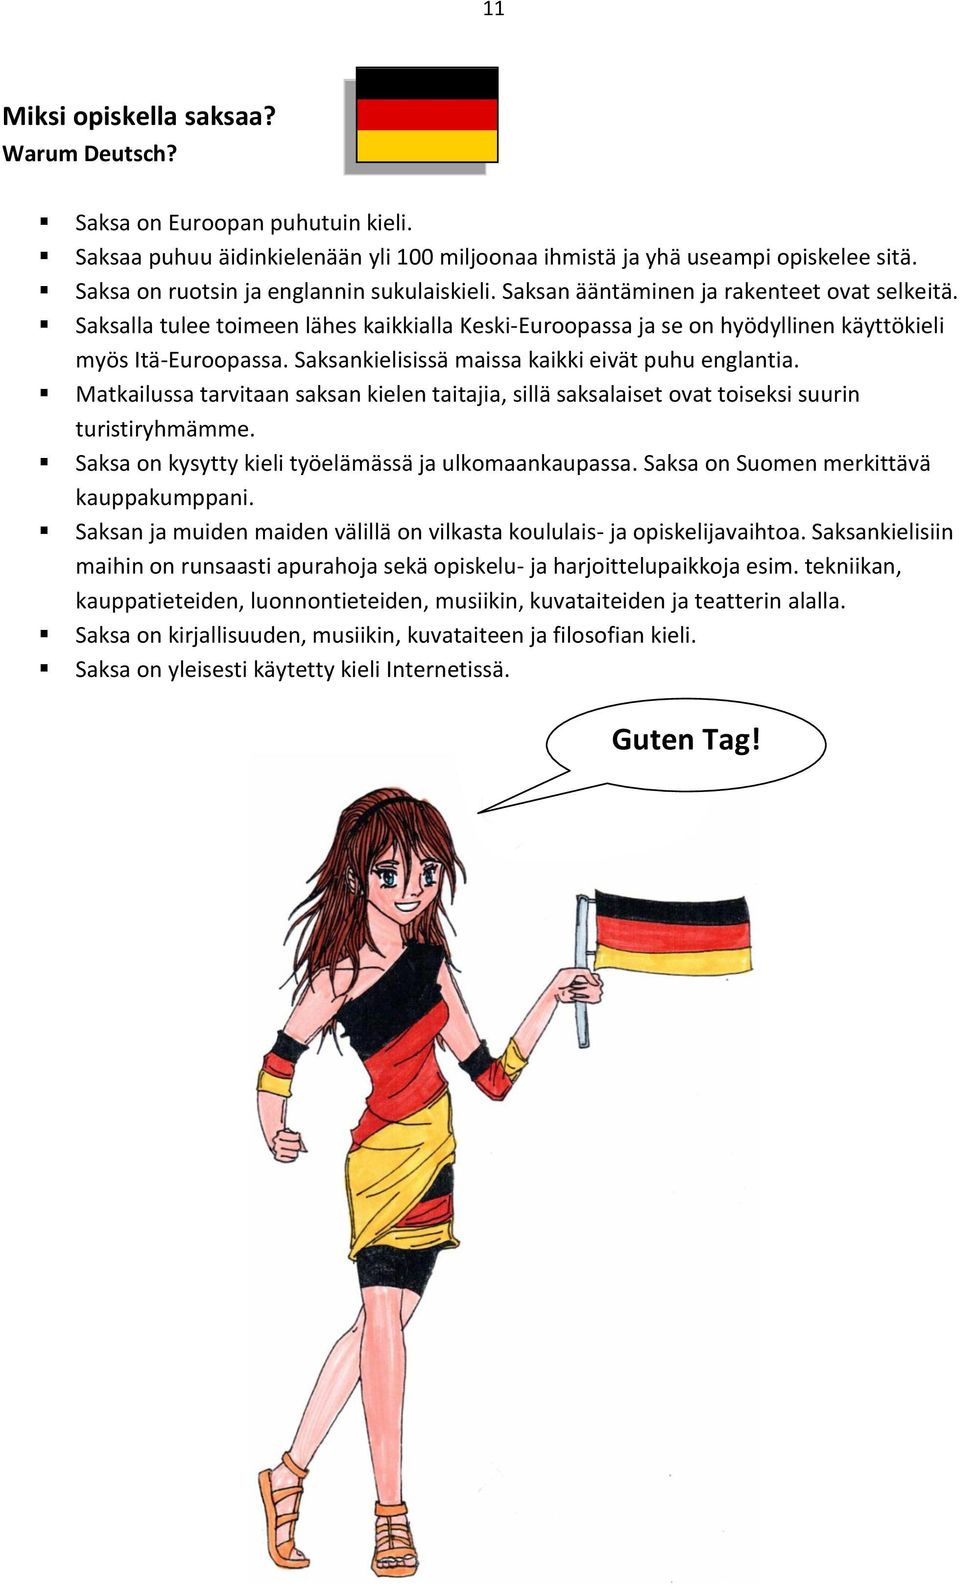 Saksalla tulee toimeen lähes kaikkialla Keski-Euroopassa ja se on hyödyllinen käyttökieli myös Itä-Euroopassa. Saksankielisissä maissa kaikki eivät puhu englantia.